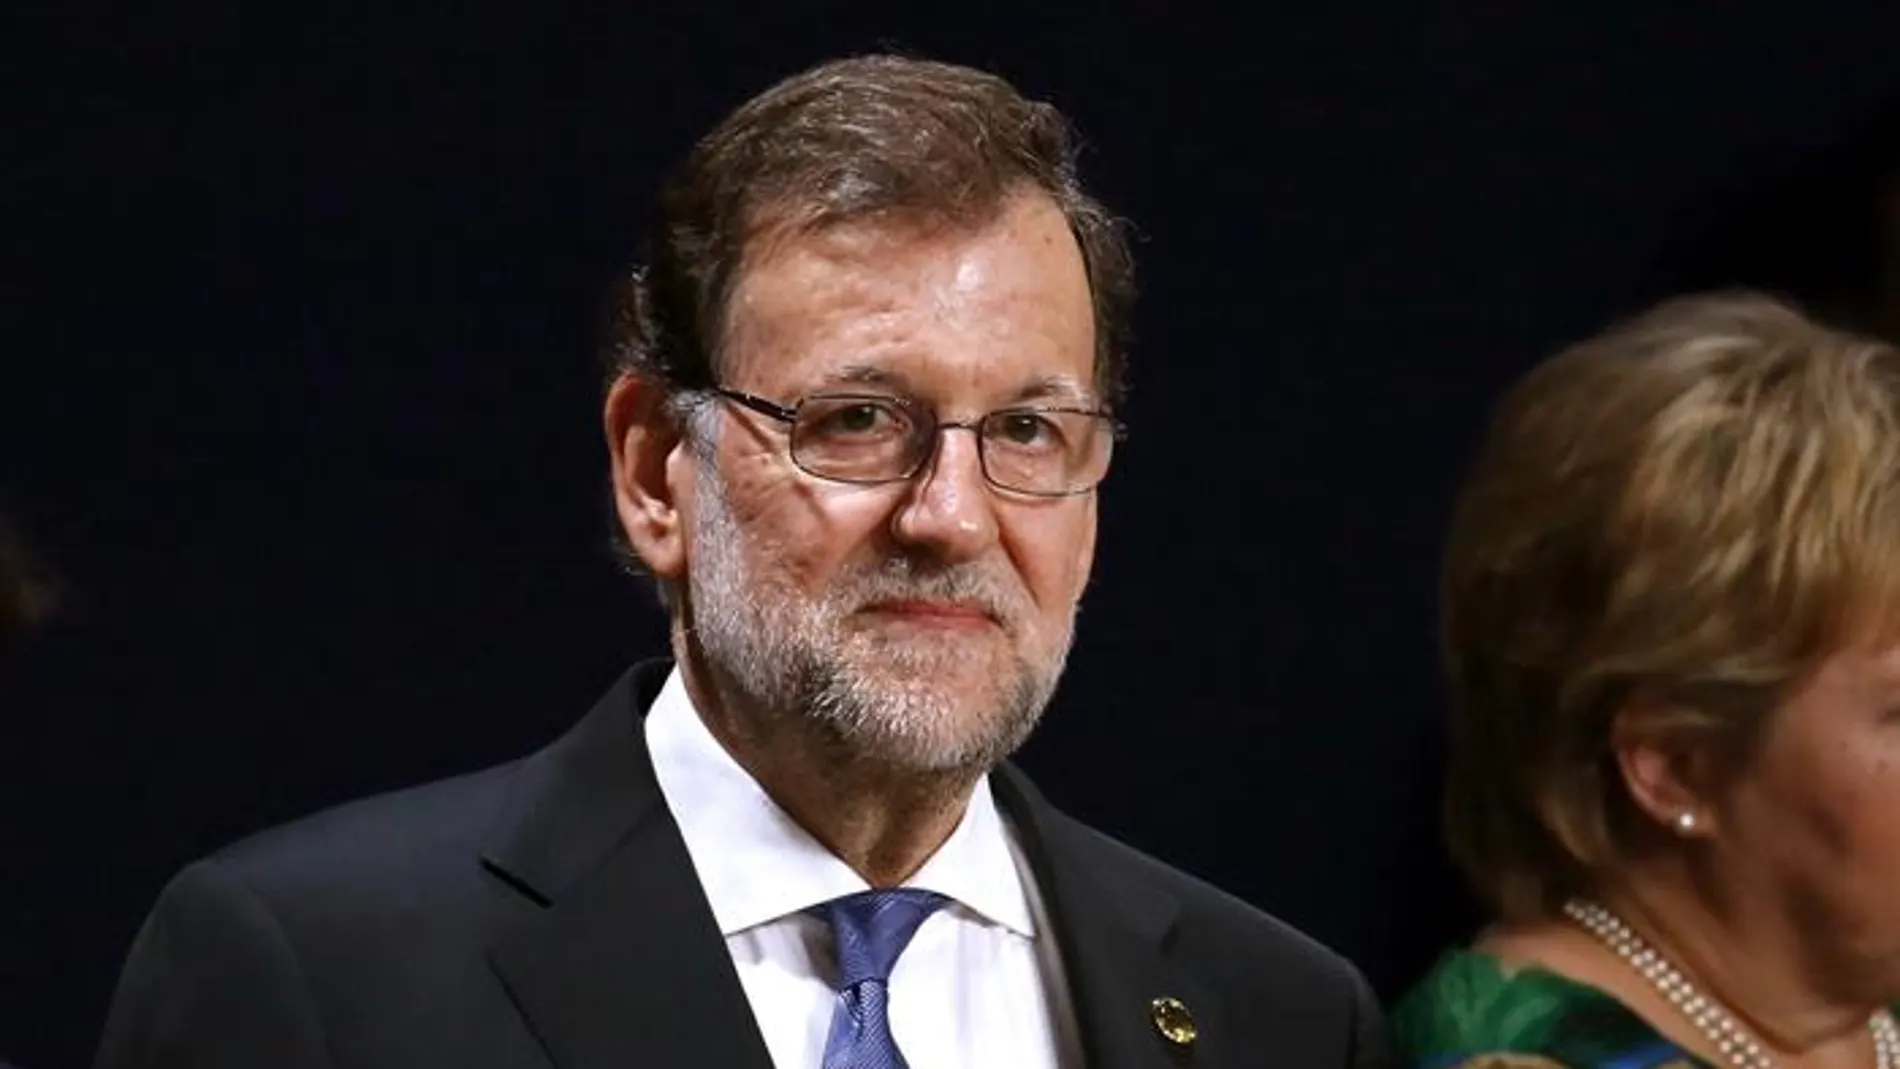  El presidente del Gobierno español, Mariano Rajoy, durante la sesión plenaria del Consejo del Atlántico Norte